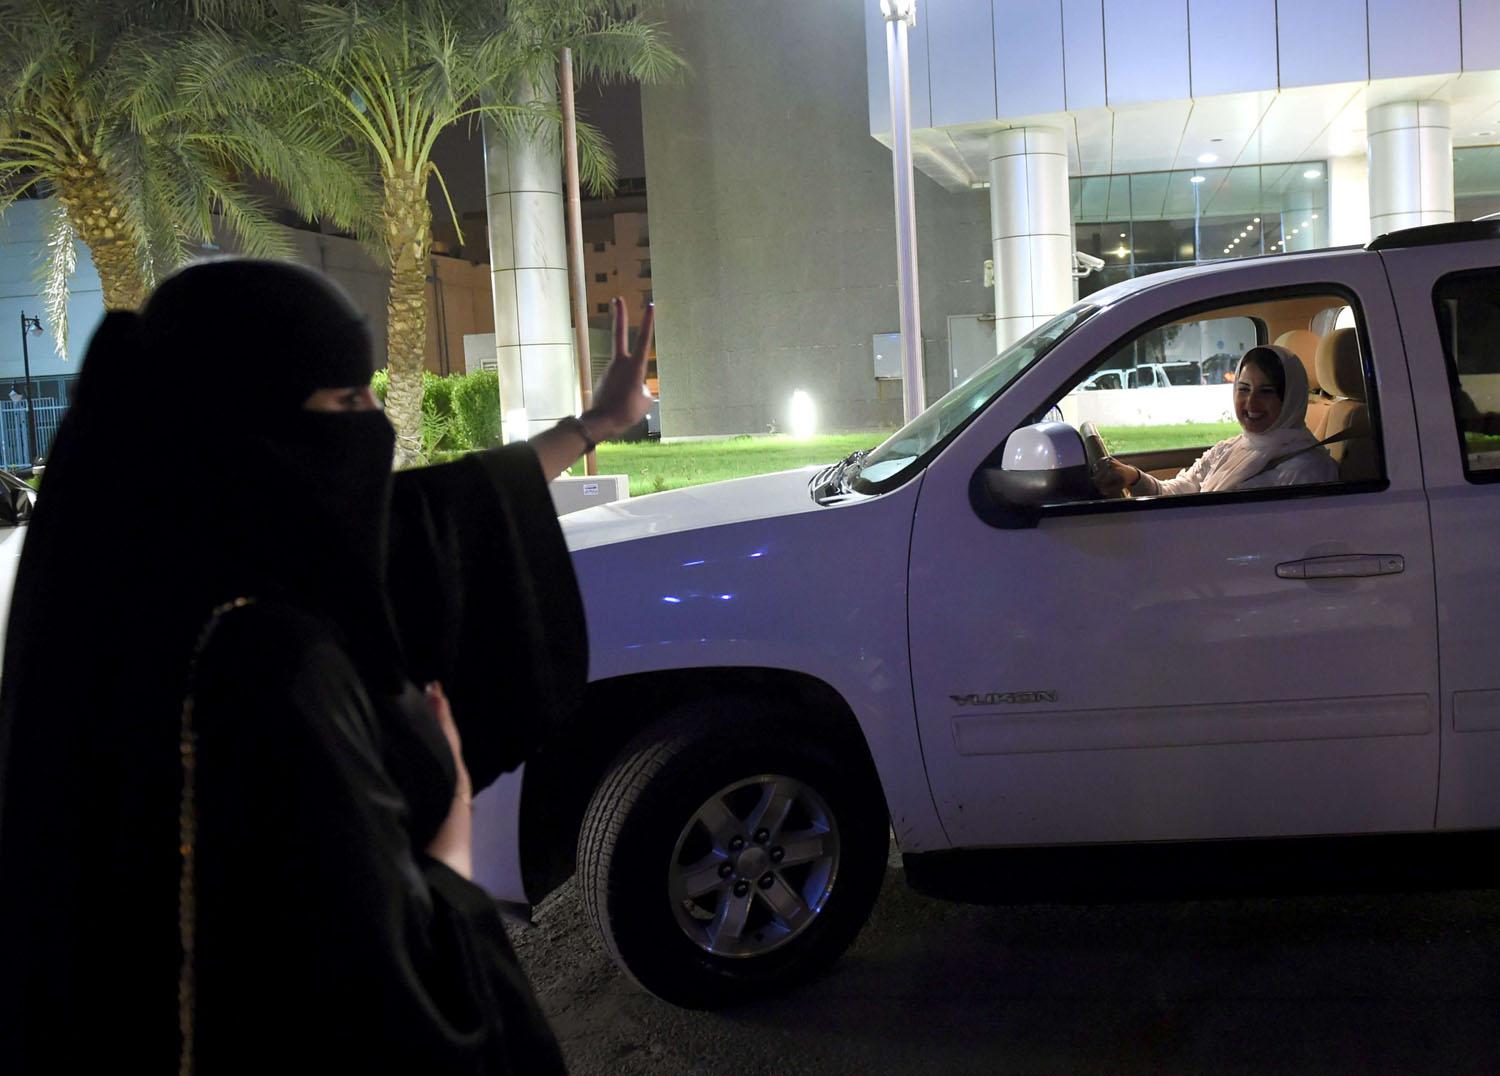 سعوديات يتبادلن التحية وشارات النصر بعد السماح للمرأة بقيادة السيارة في السعودية